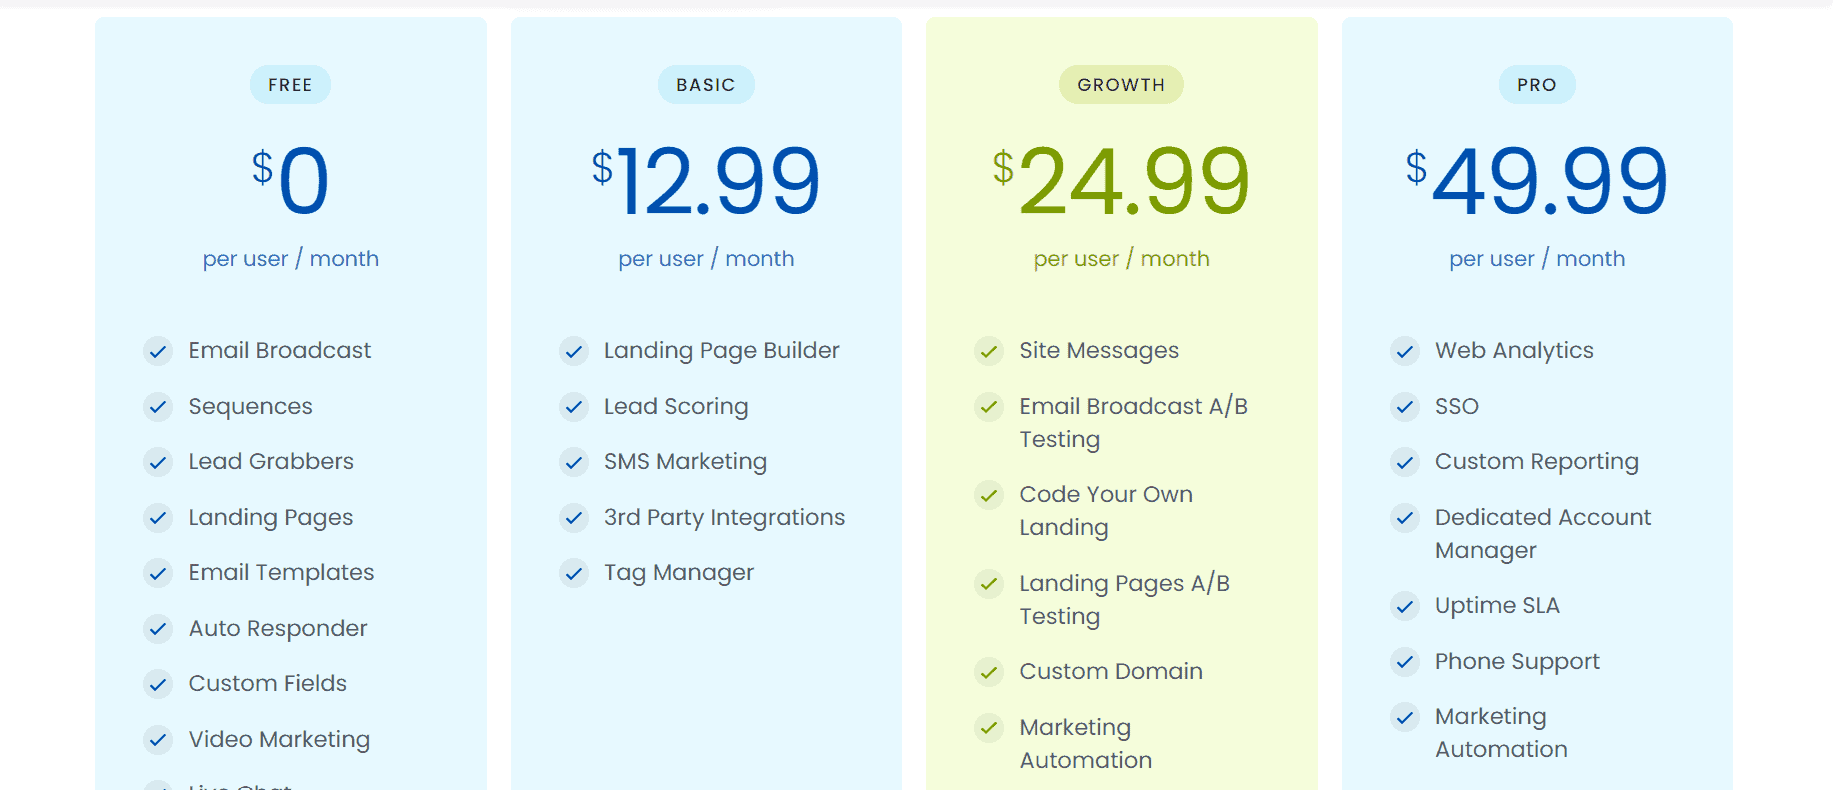 Engagebay pricing